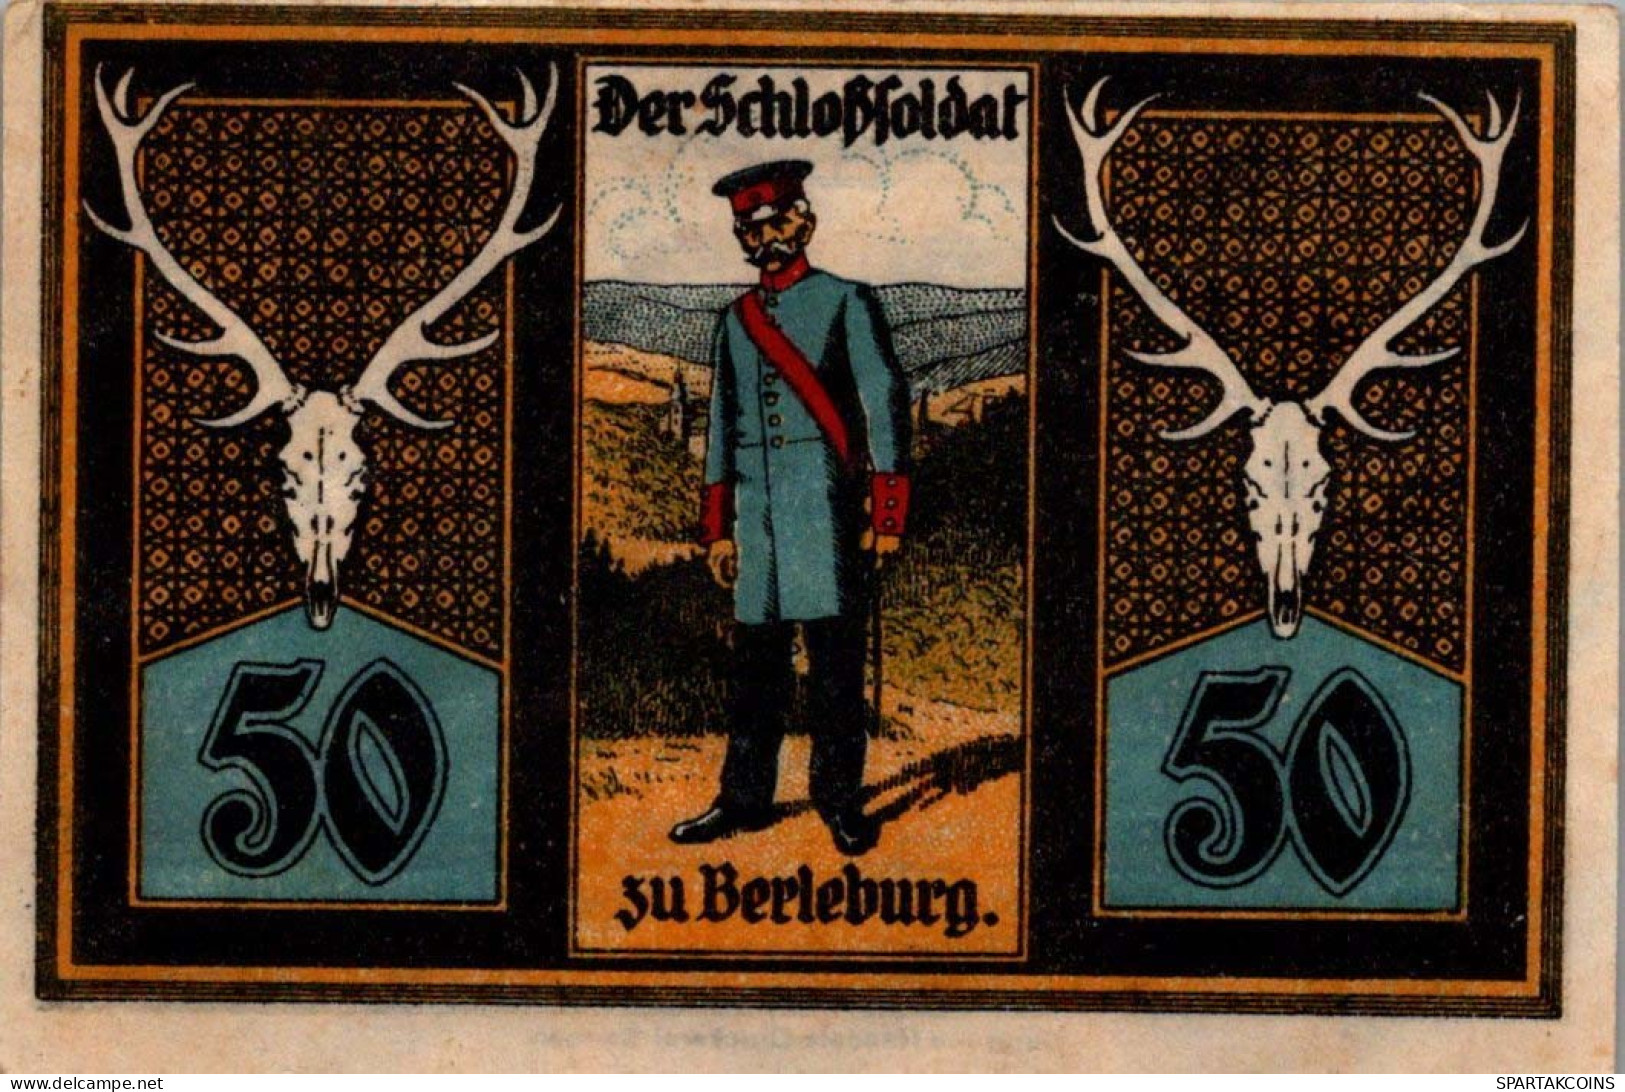 50 PFENNIG 1921 Stadt BERLEBURG Westphalia UNC DEUTSCHLAND Notgeld #PA146 - Lokale Ausgaben